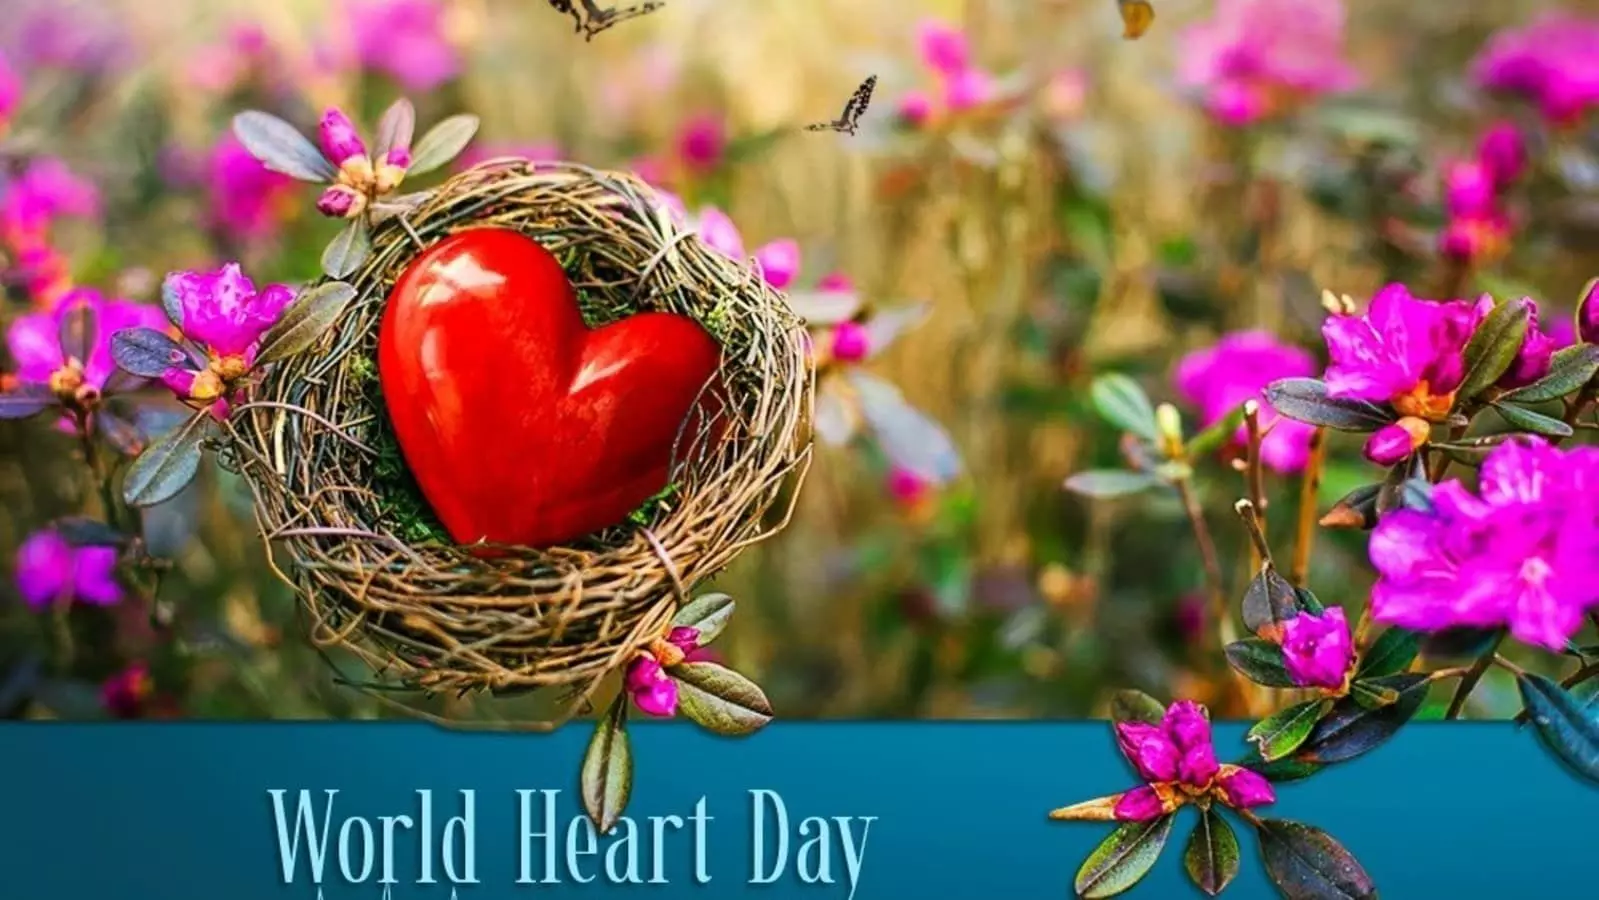 World Heart Day Special Coverage : स्वस्थ और सजग भोजन व्यवस्था  हृदय संबंधी बीमारियों को रोकने में मददगार